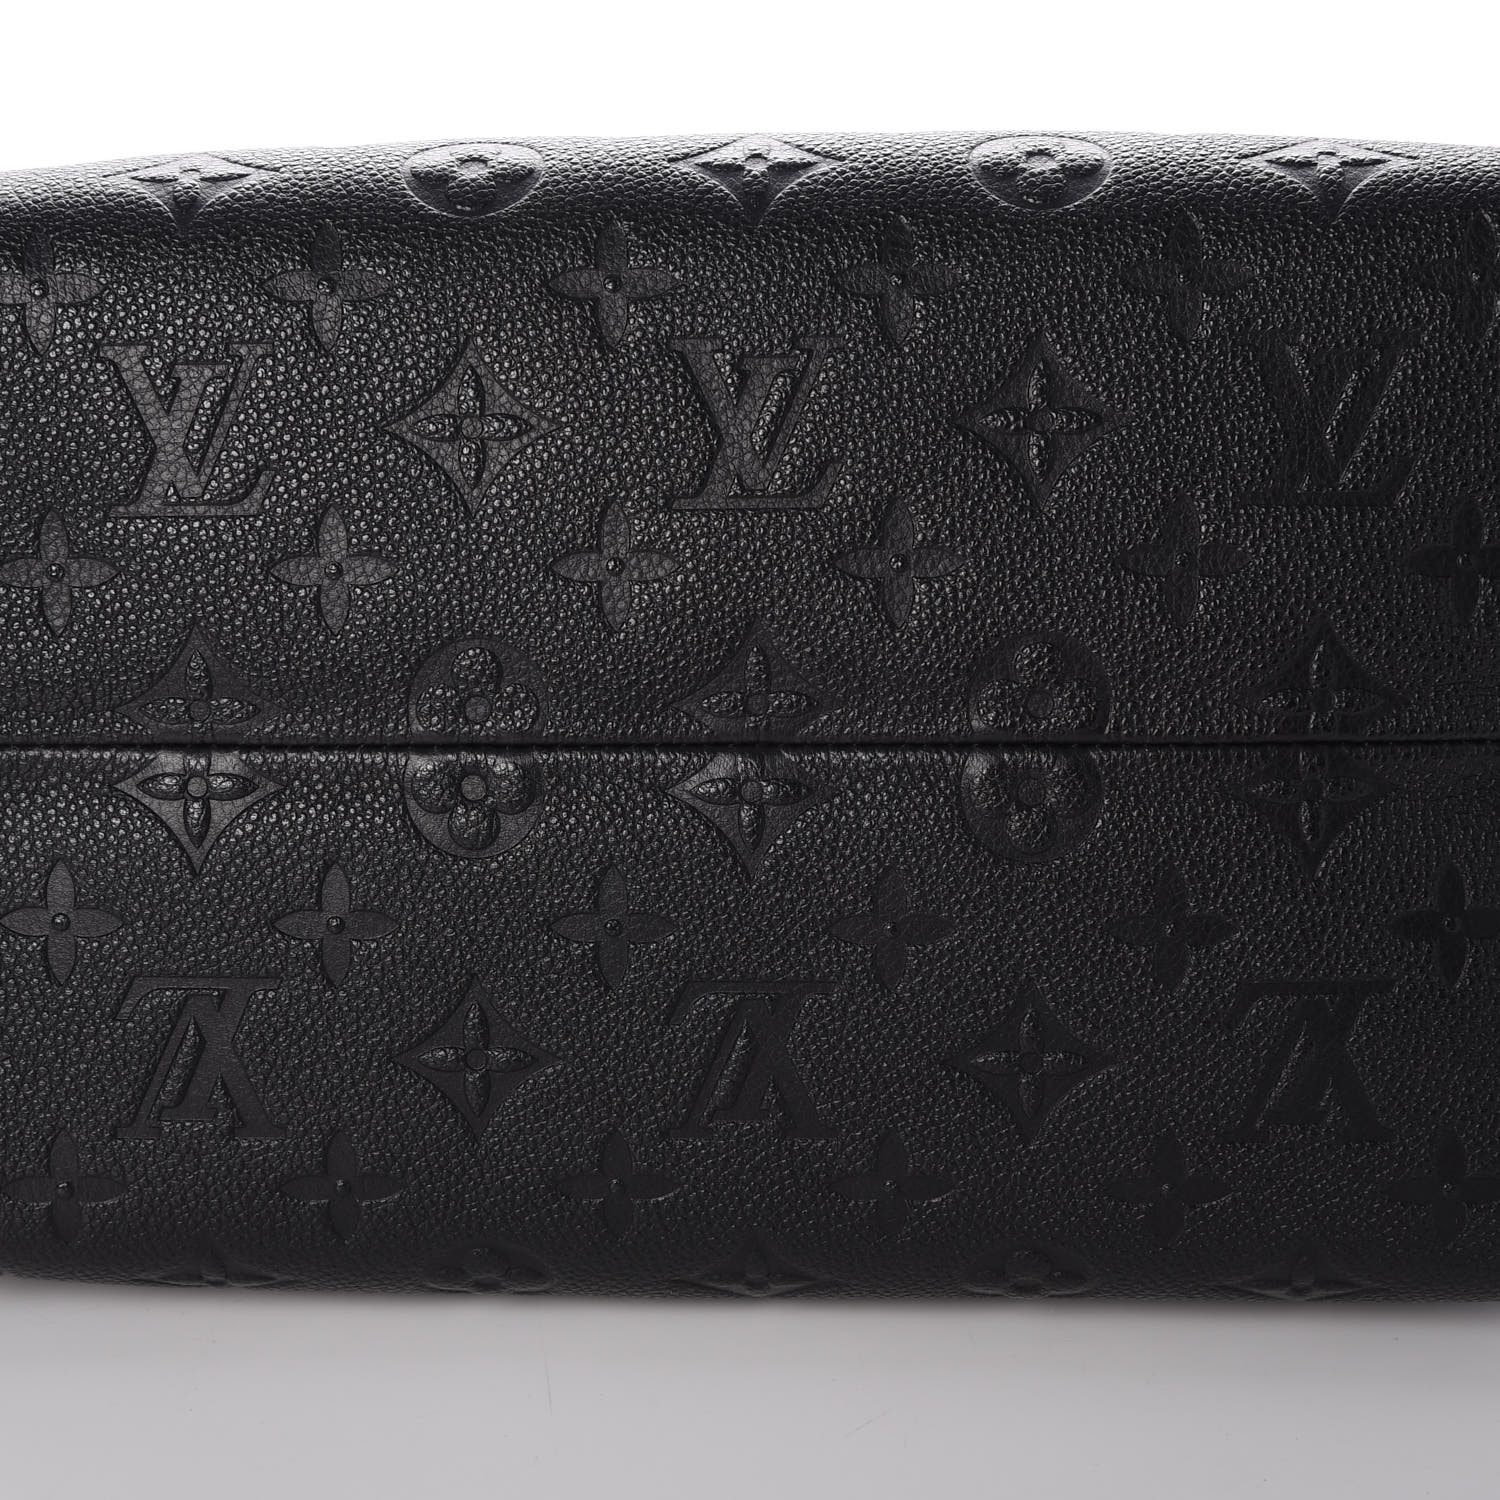 Louis Vuitton Aurore Monogram Empreinte Speedy Bandouliere 25 Raisin Leather